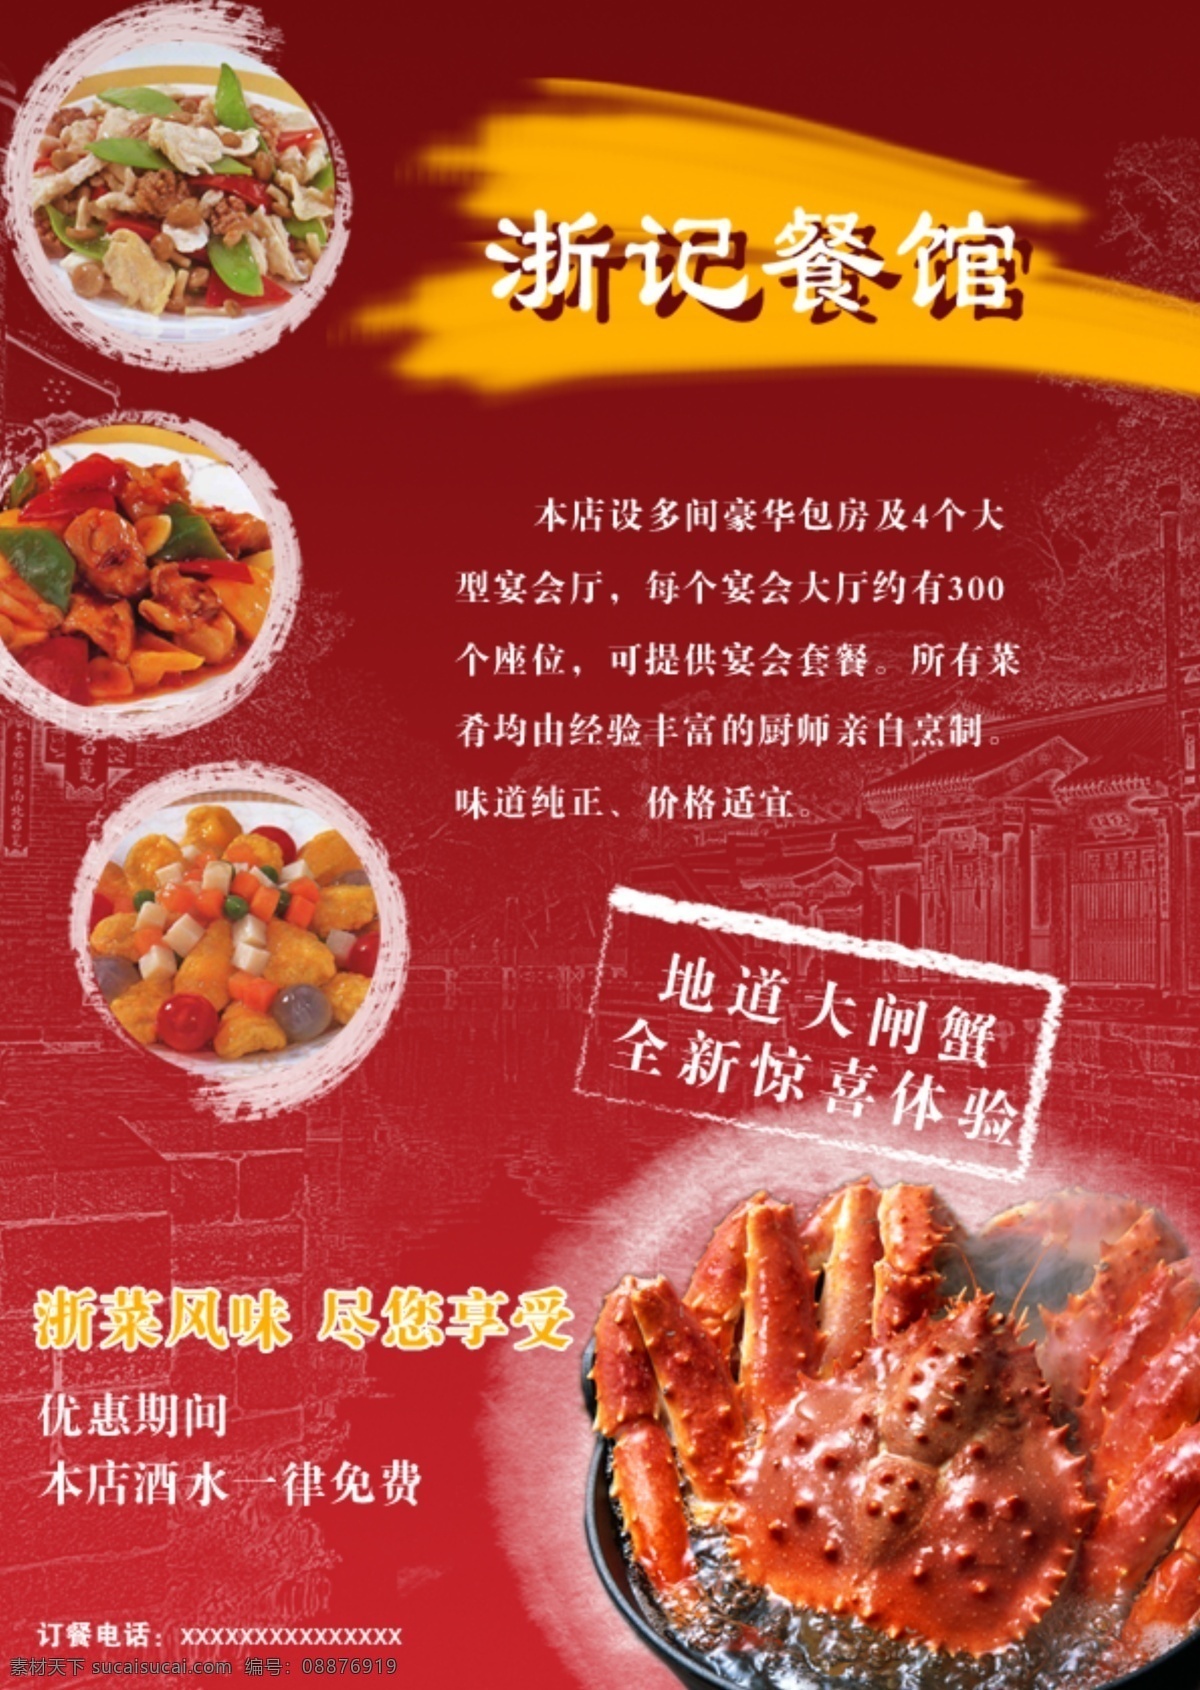 餐饮 食品 餐厅 小海 报 宣传单 大闸蟹 餐饮食品 餐厅小海报 红色